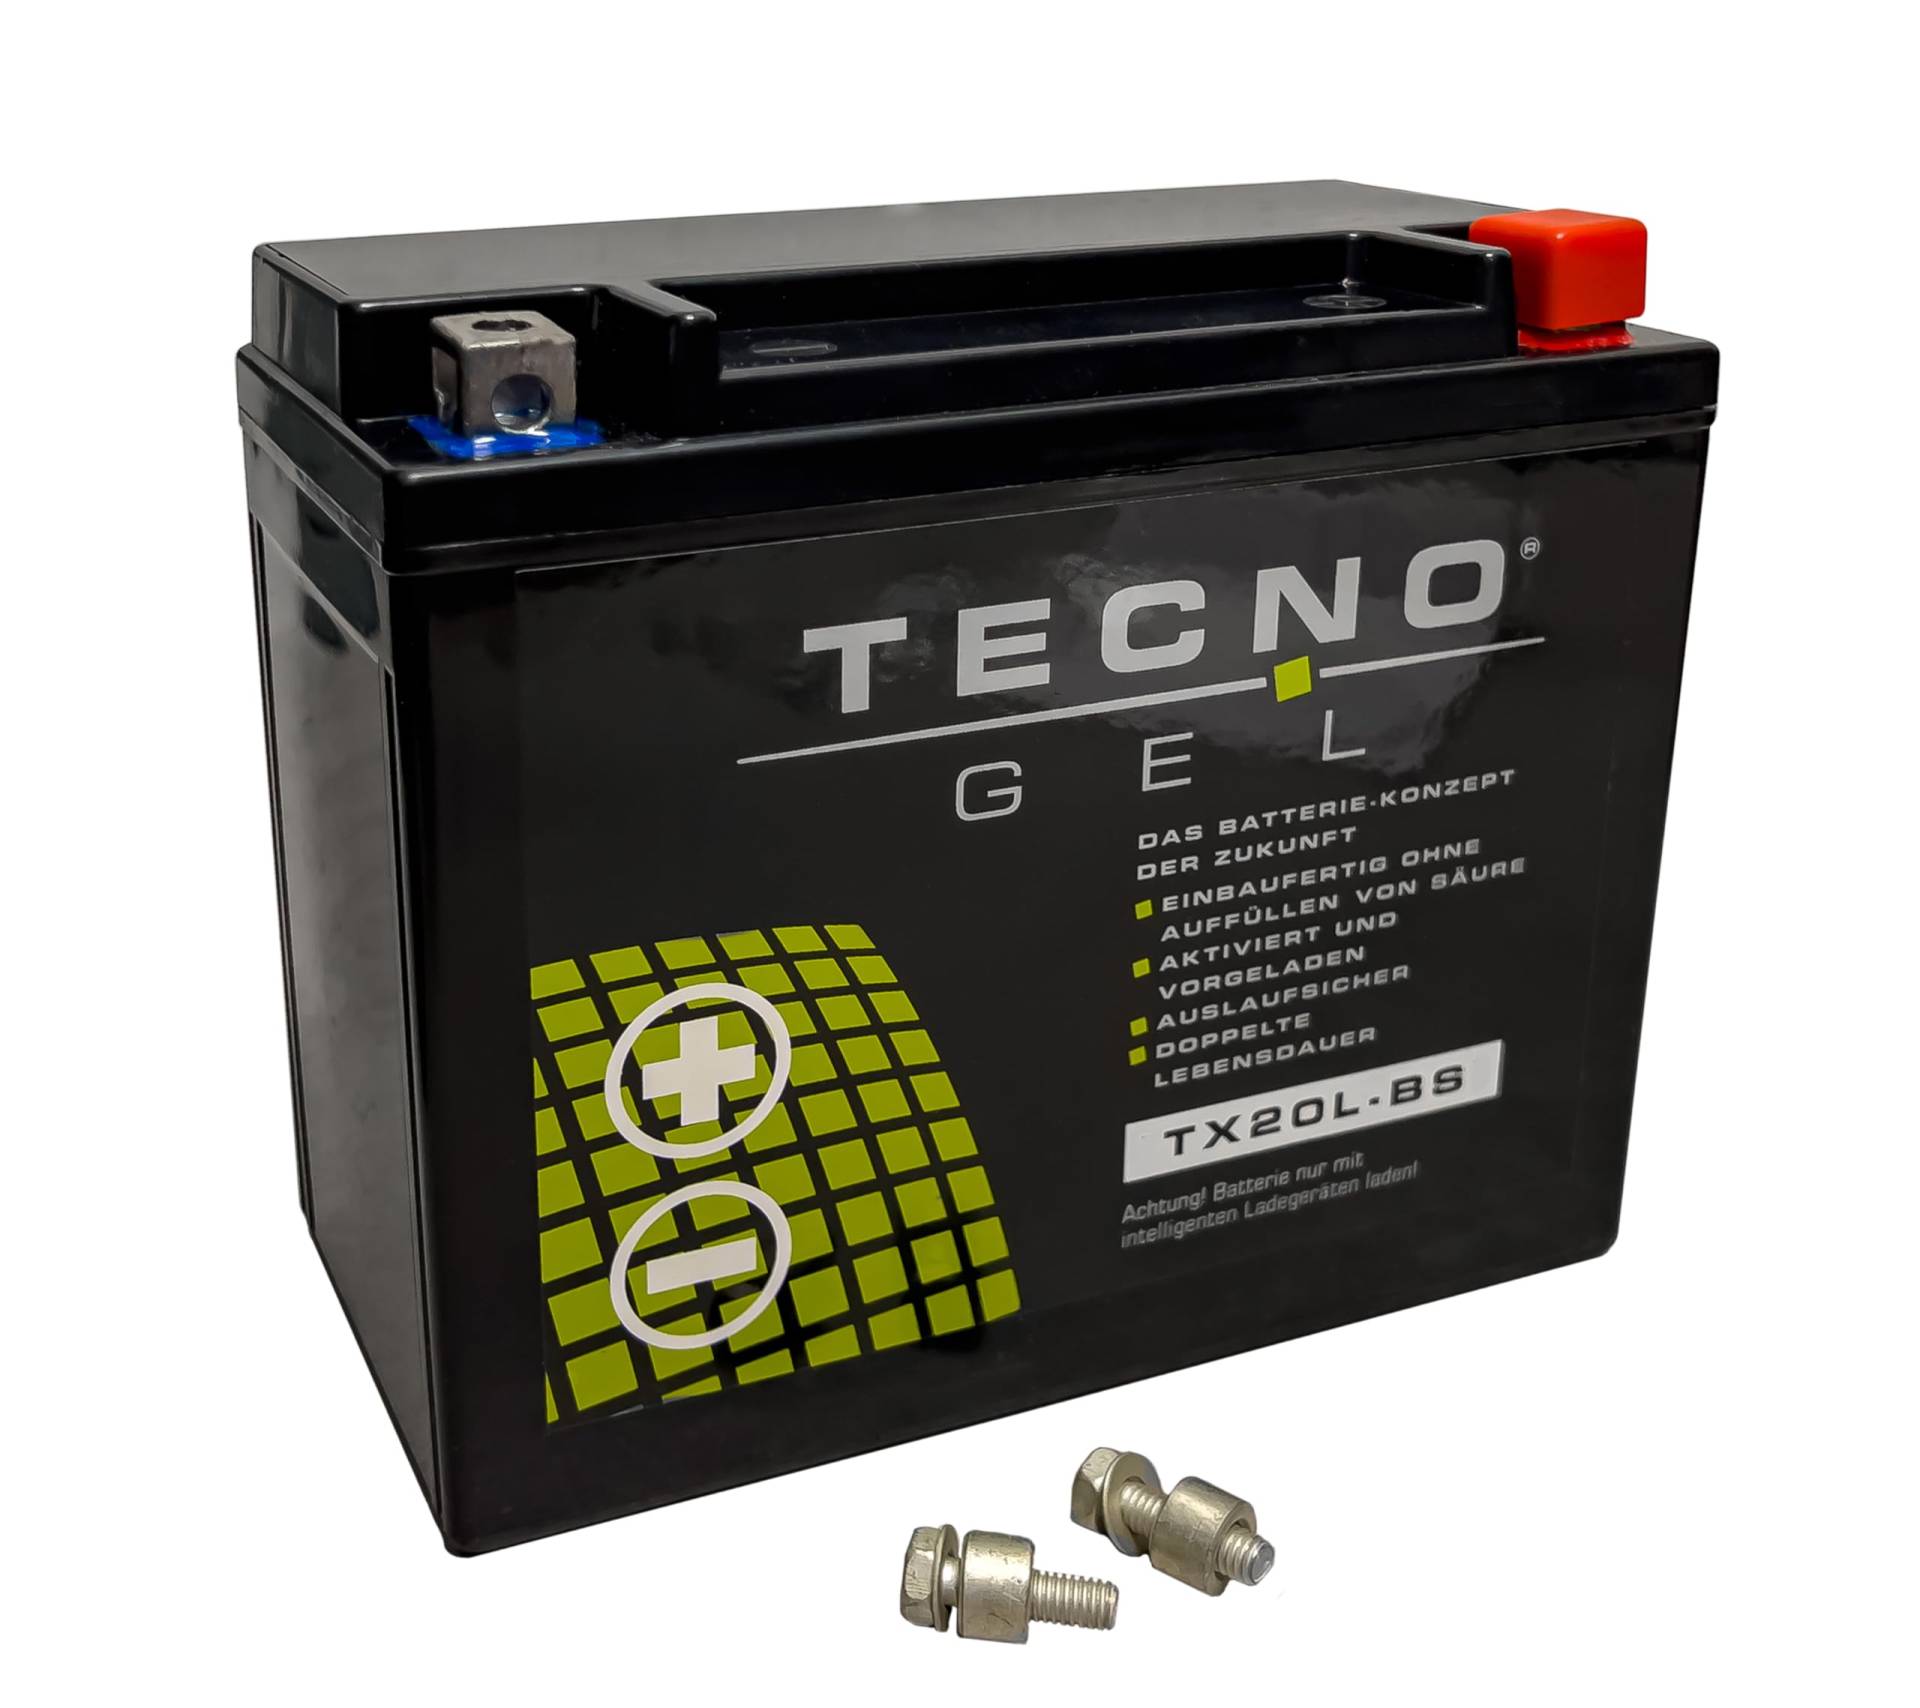 TECNO-GEL Motorrad-Batterie für YTX20L-BS für CAN-AM Commander 800/1000 uva. 12V Gel-Batterie 20Ah (DIN 82000), 175x87x155 mm von Wirth-Federn